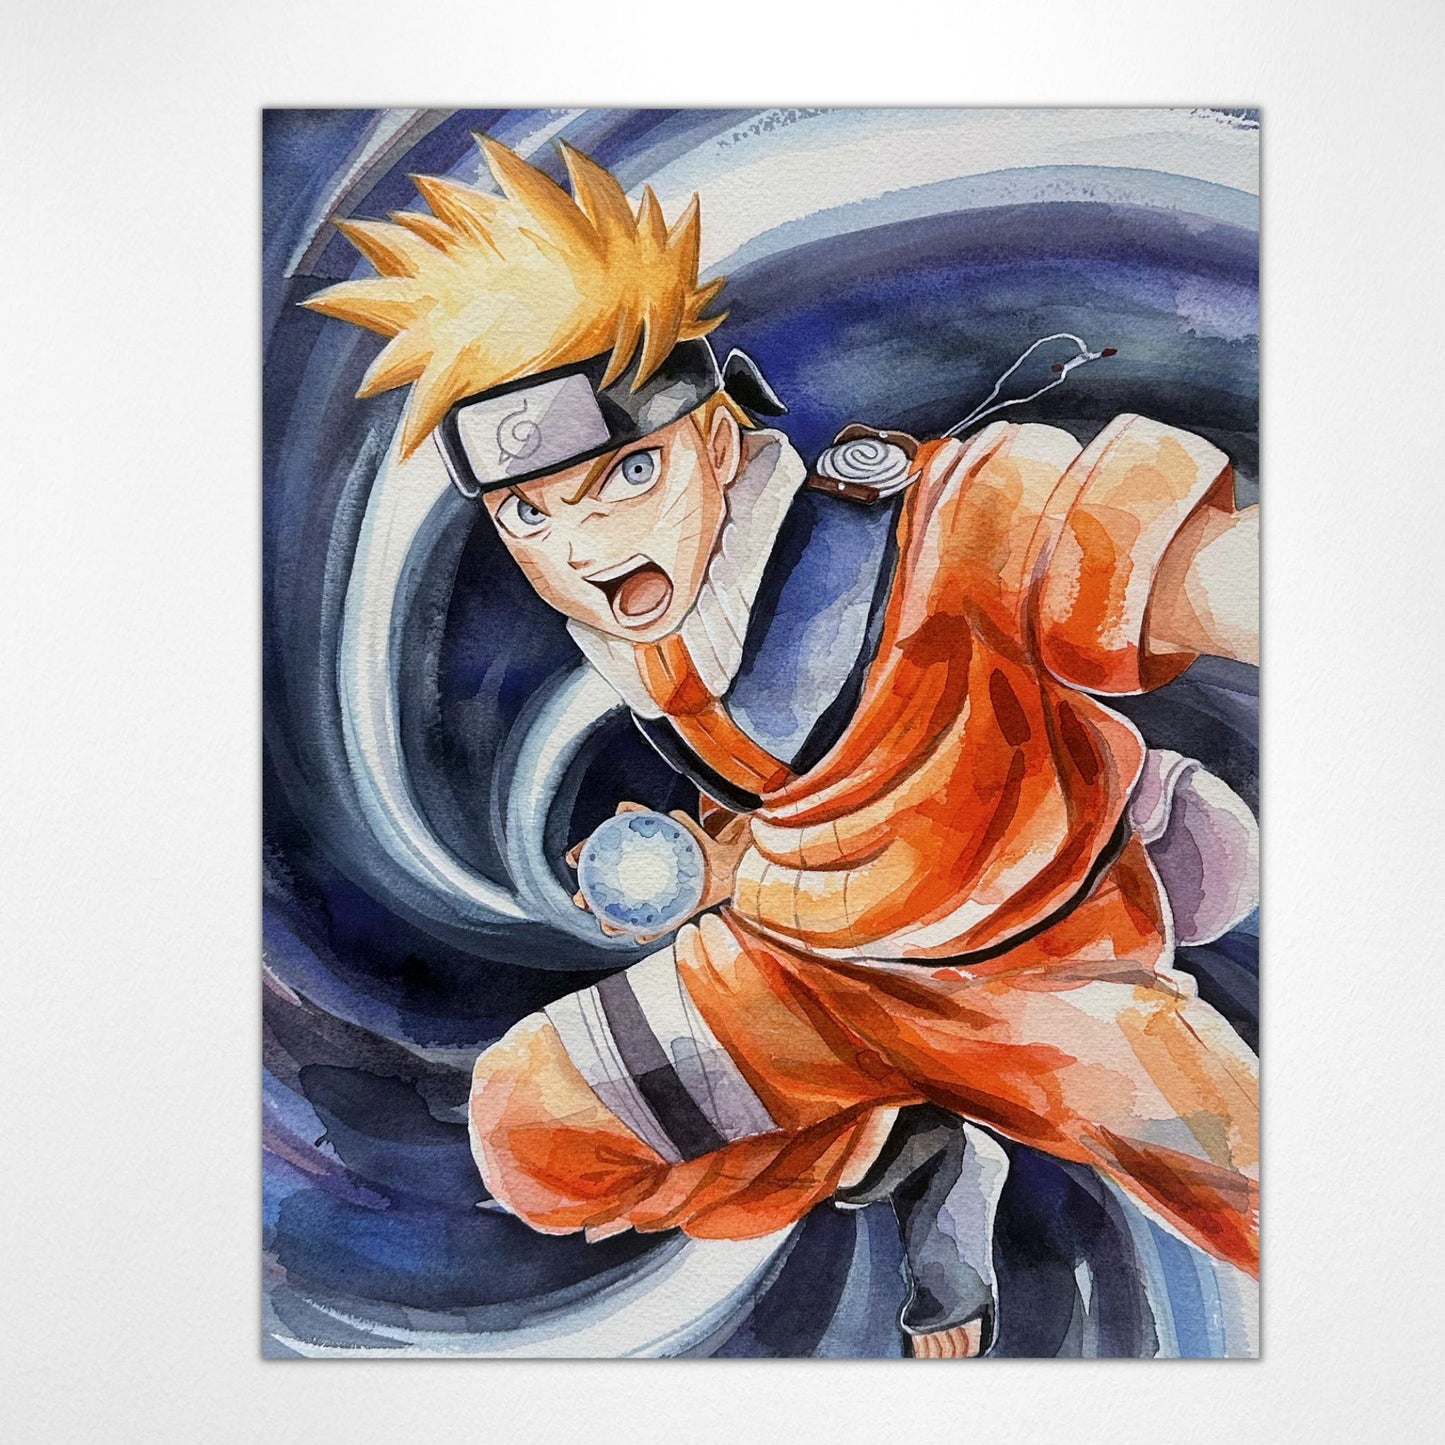 Naruto Uzumaki "Young Ninja" Naruto Shippuden Watercolor Art Print